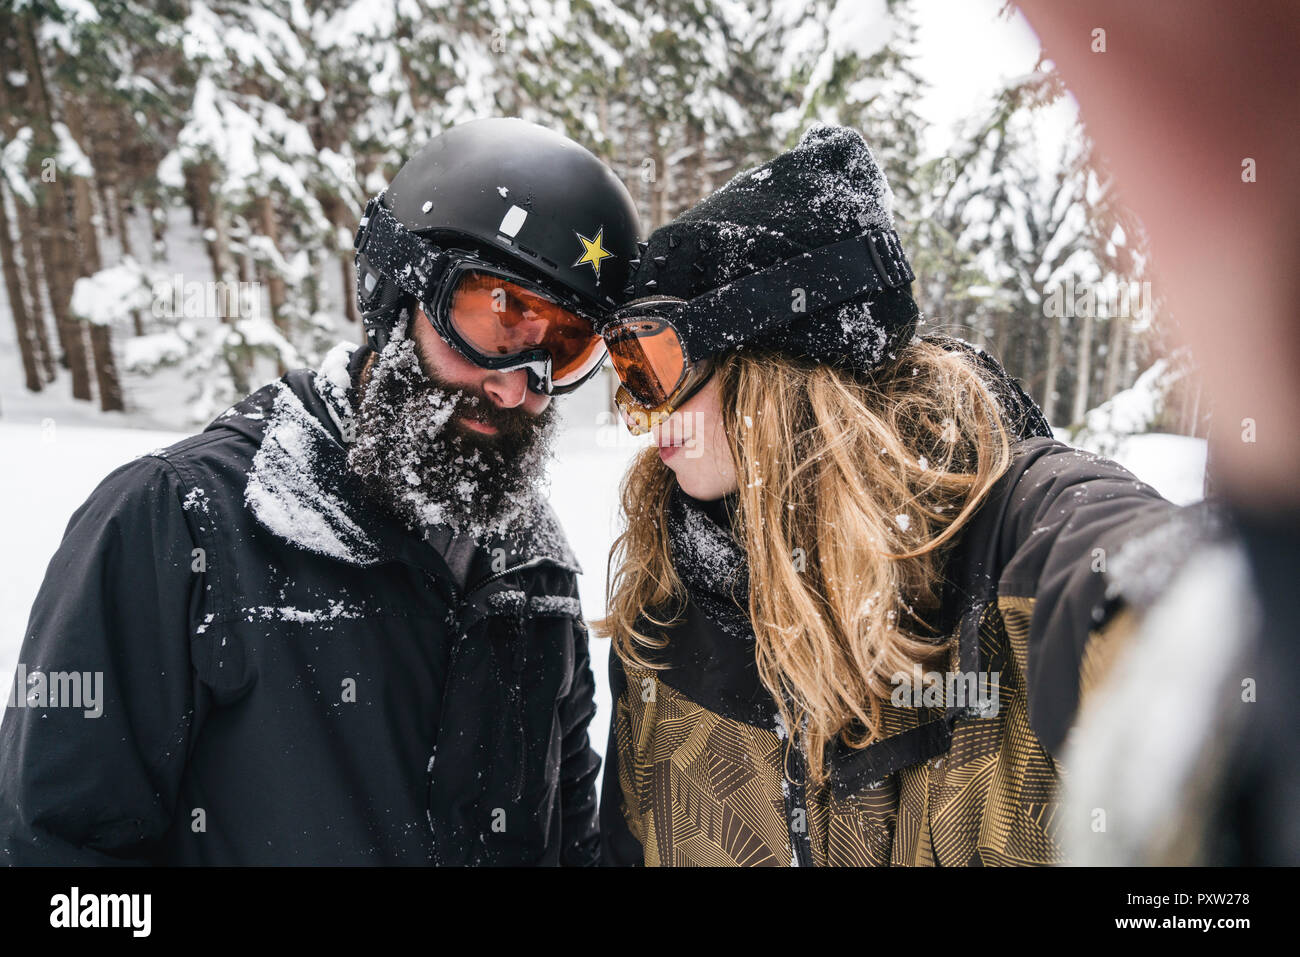 Von selfie Paar in skibekleidung im Winter Wald Stockfoto